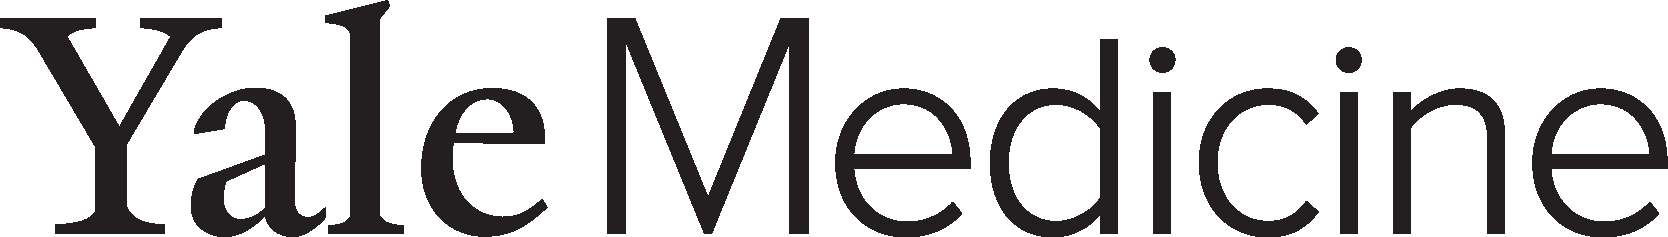 Yale Medicine Logo